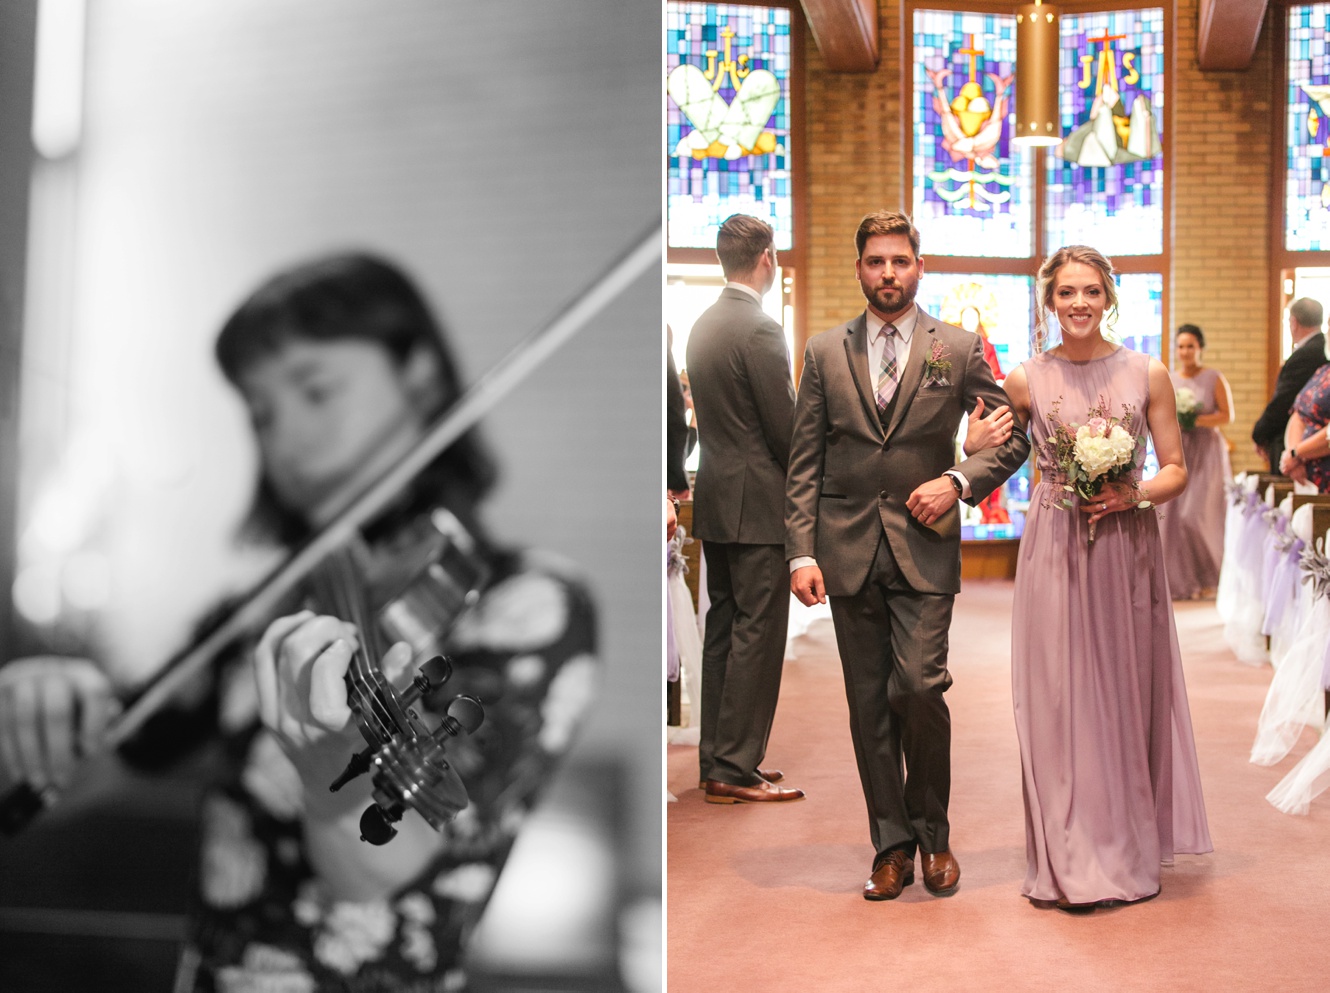 Violin music at wedding photo